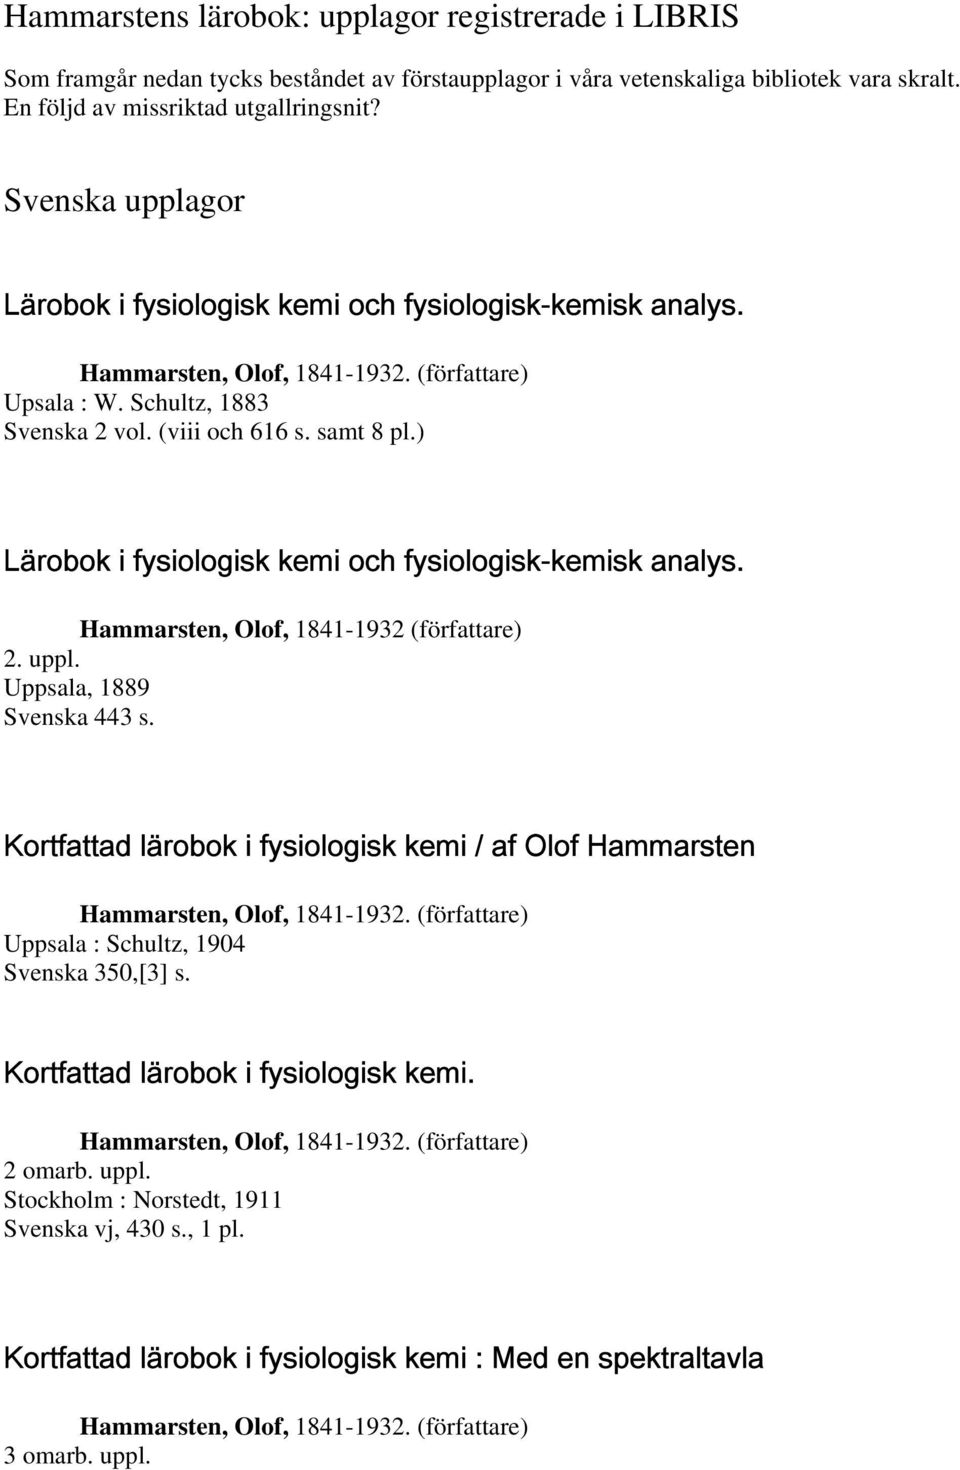 ) Lärobok i fysiologisk kemi och fysiologisk-kemisk analys. Hammarsten, Olof, 1841-1932 (författare) 2. uppl. Uppsala, 1889 Svenska 443 s.